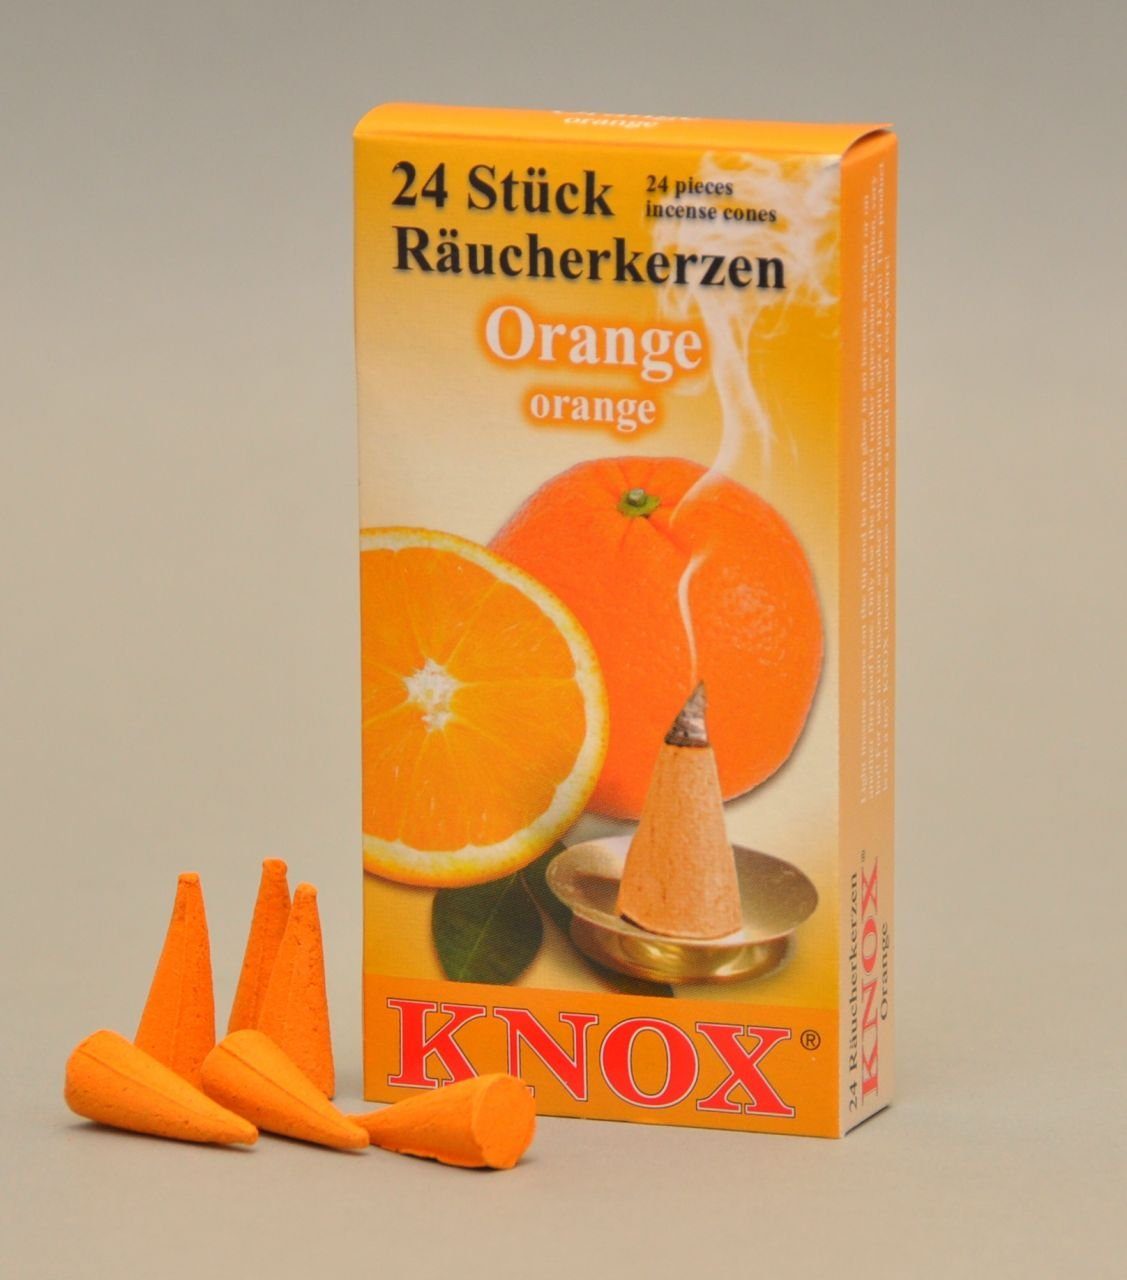 KNOX Räucherhaus Knox Räucherkerzen - Orange 24 Stück